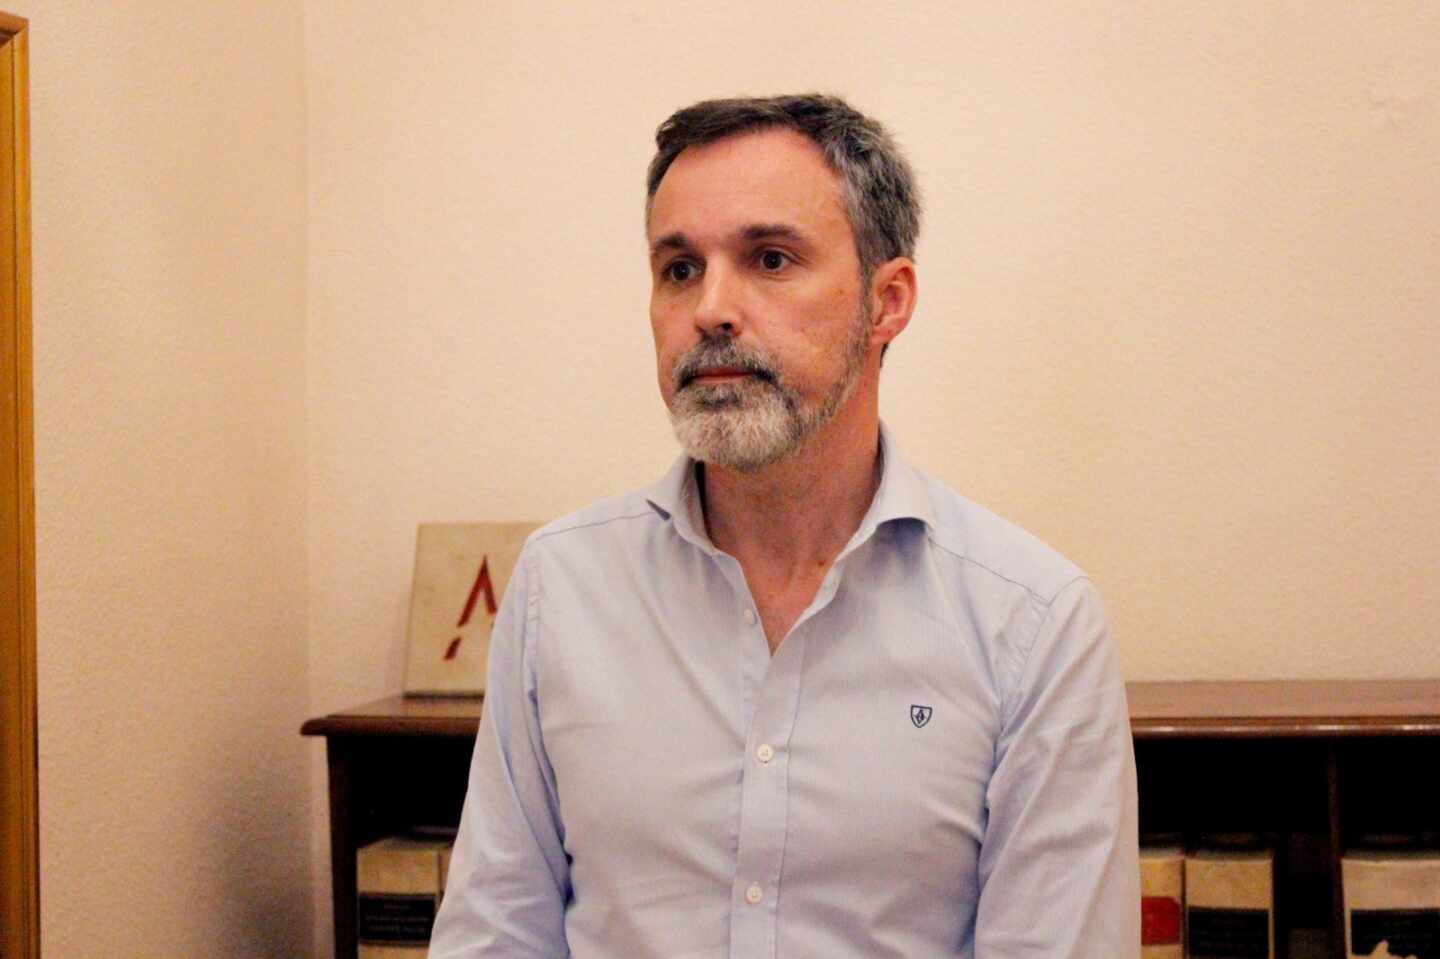 Jorge Fernández Vaquero, magistrado y portavoz nacional de la Asociación Judicial Francisco de Vitoria (AJFV), en su despacho.